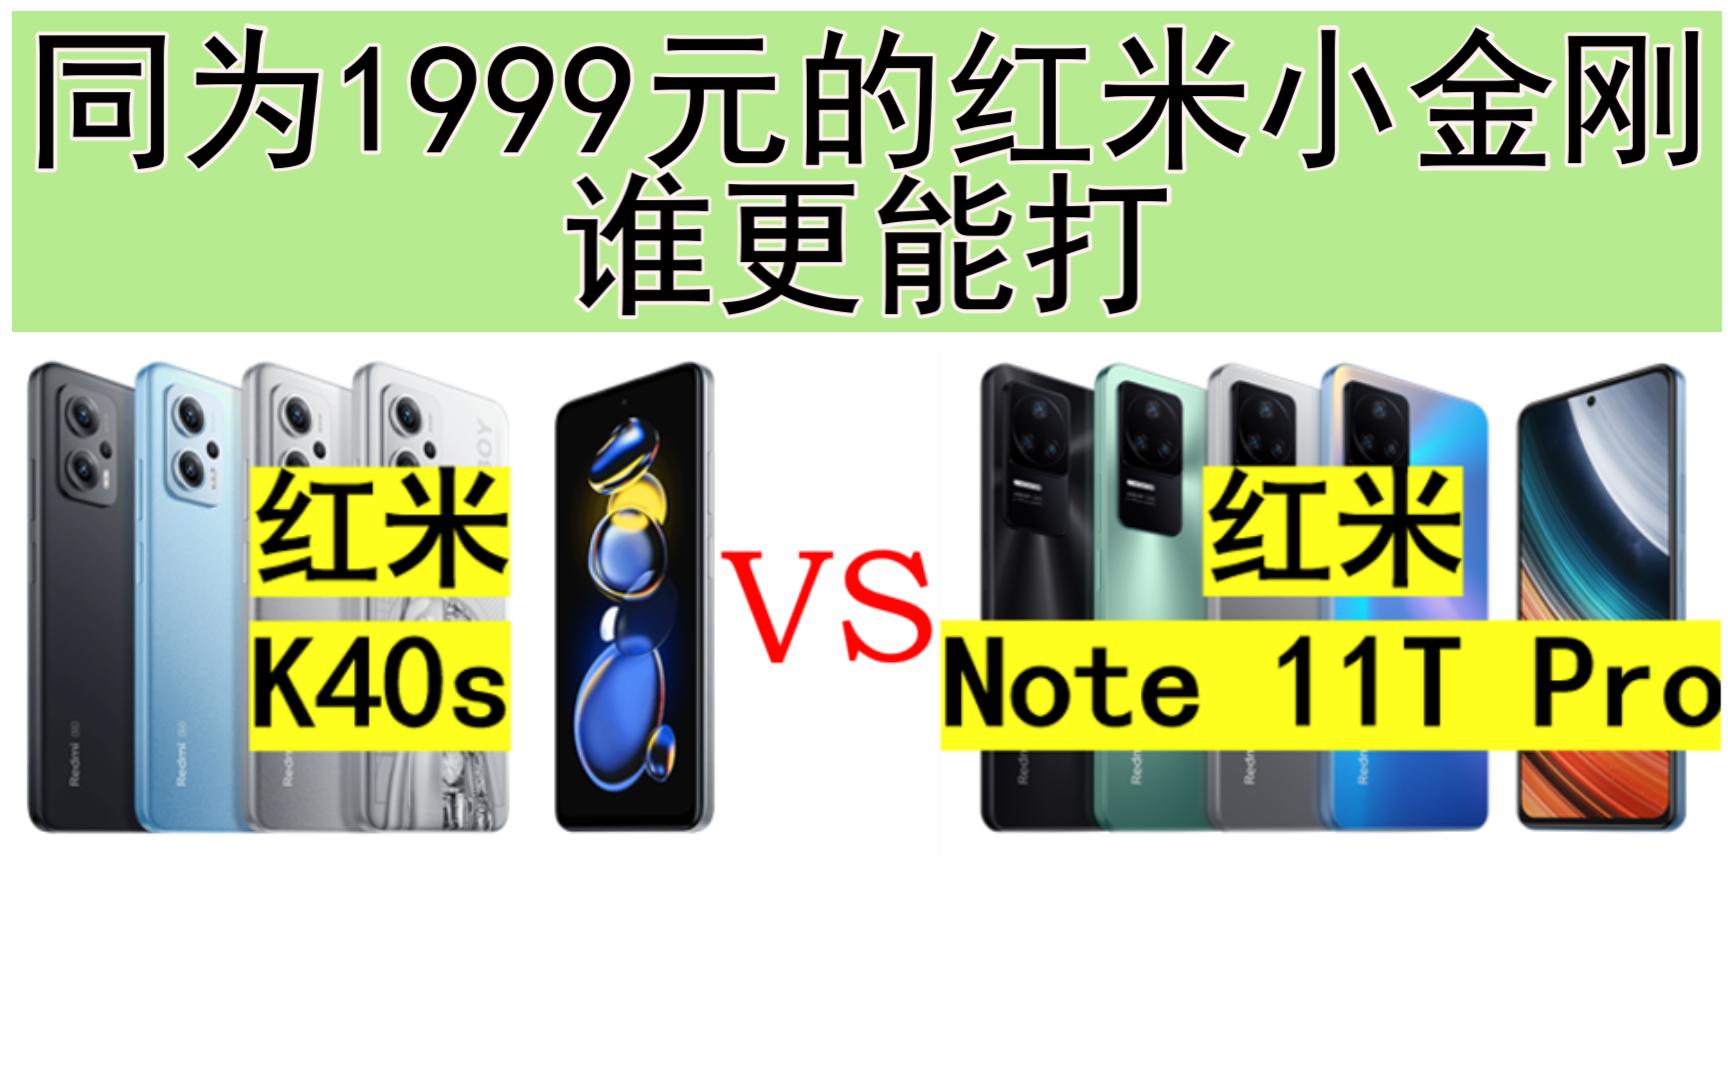 【红米对比】Note 11T Pro 对比 K40s